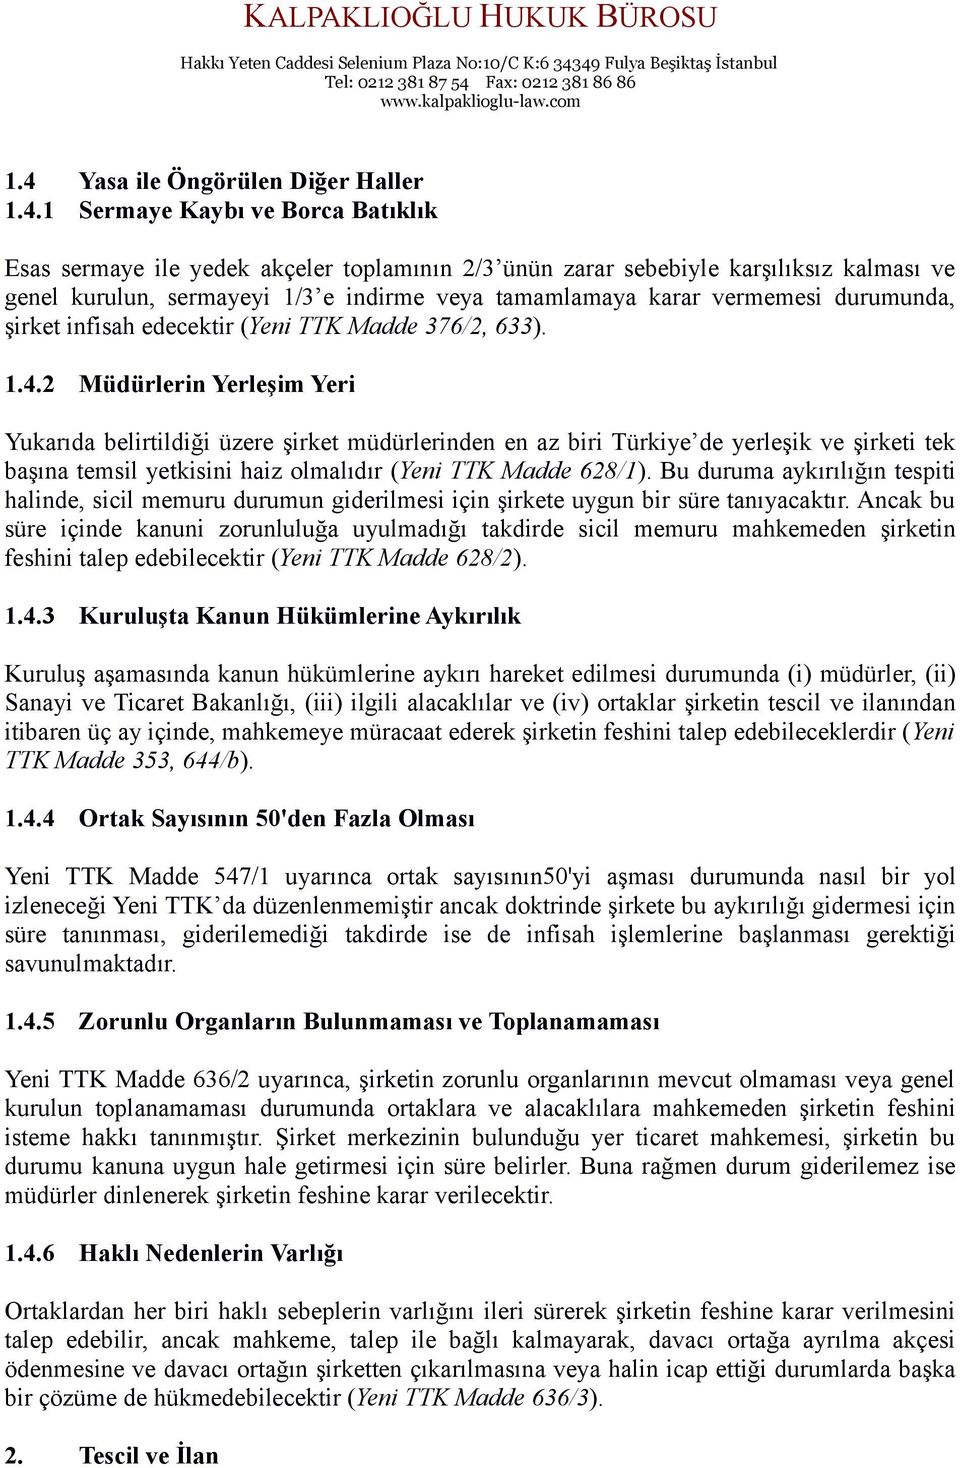 2 Müdürlerin Yerleşim Yeri Yukarıda belirtildiği üzere şirket müdürlerinden en az biri Türkiye de yerleşik ve şirketi tek başına temsil yetkisini haiz olmalıdır (Yeni TTK Madde 628/1).